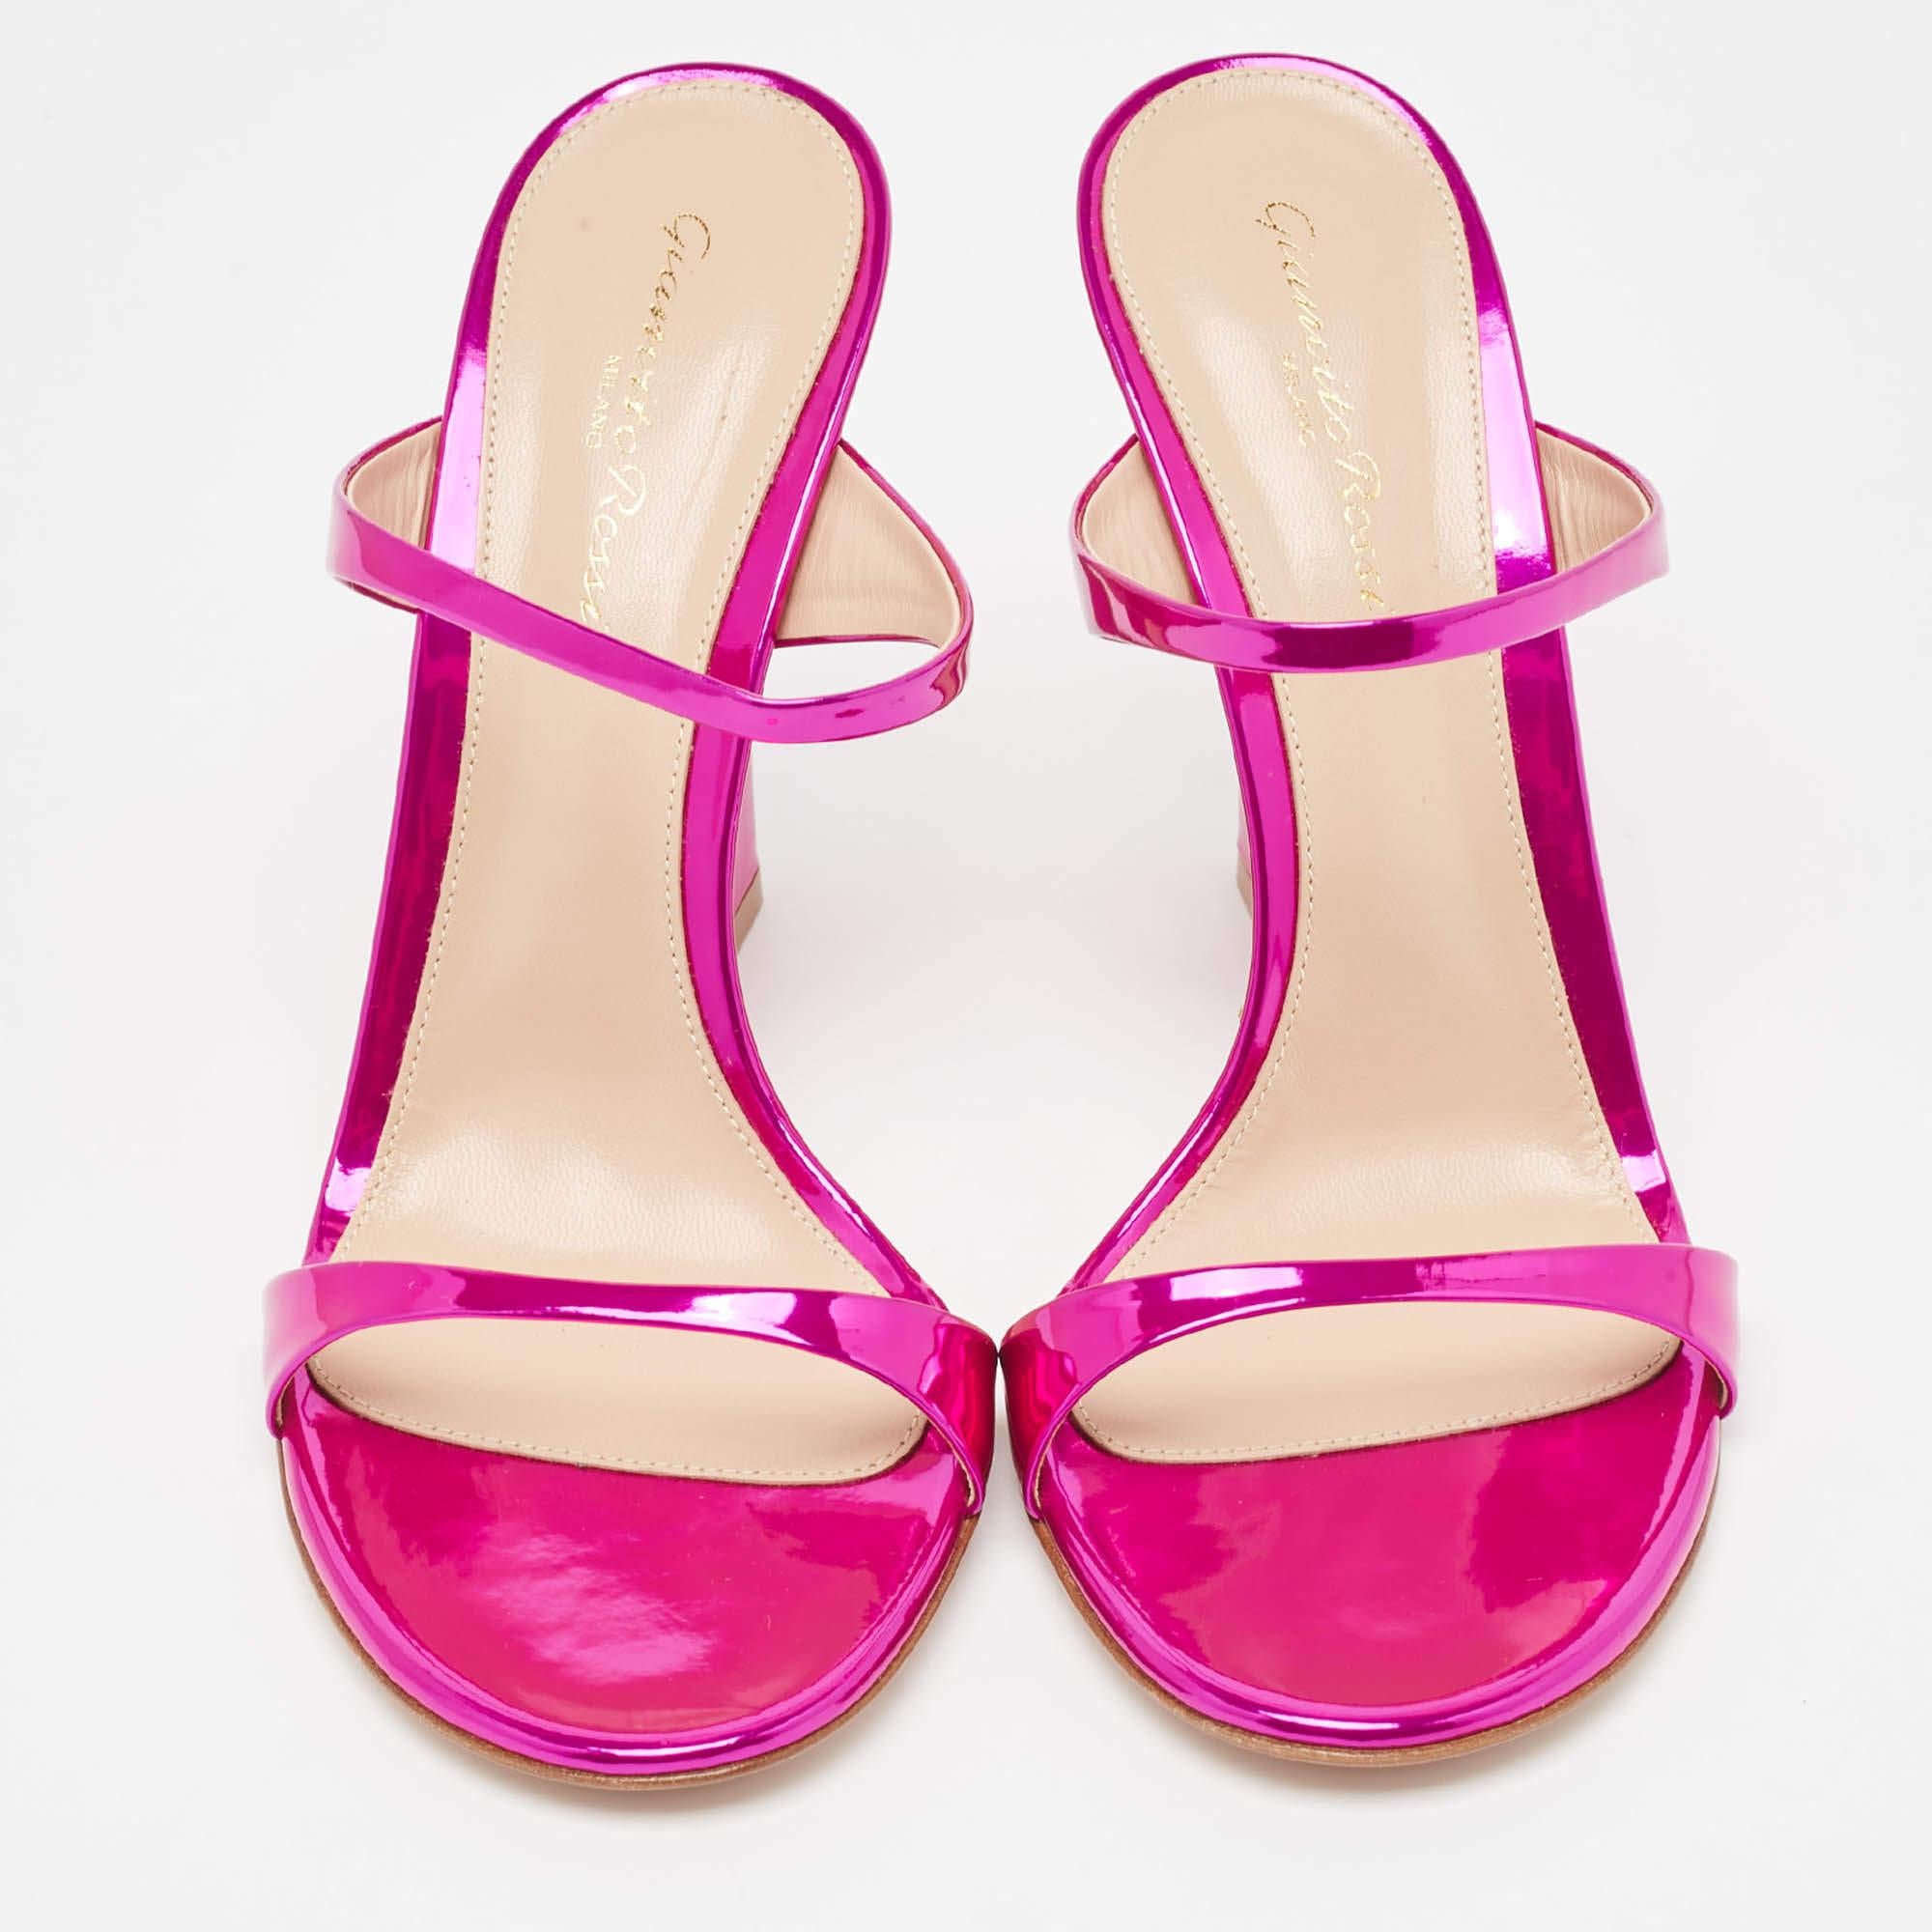 Ces sandales Aura de Gianvito Rossi encadreront vos pieds de manière élégante. Fabriquées à partir de matériaux de qualité, elles arborent une présentation élégante, des semelles intérieures confortables et des talons durables.

Comprend : Pointes